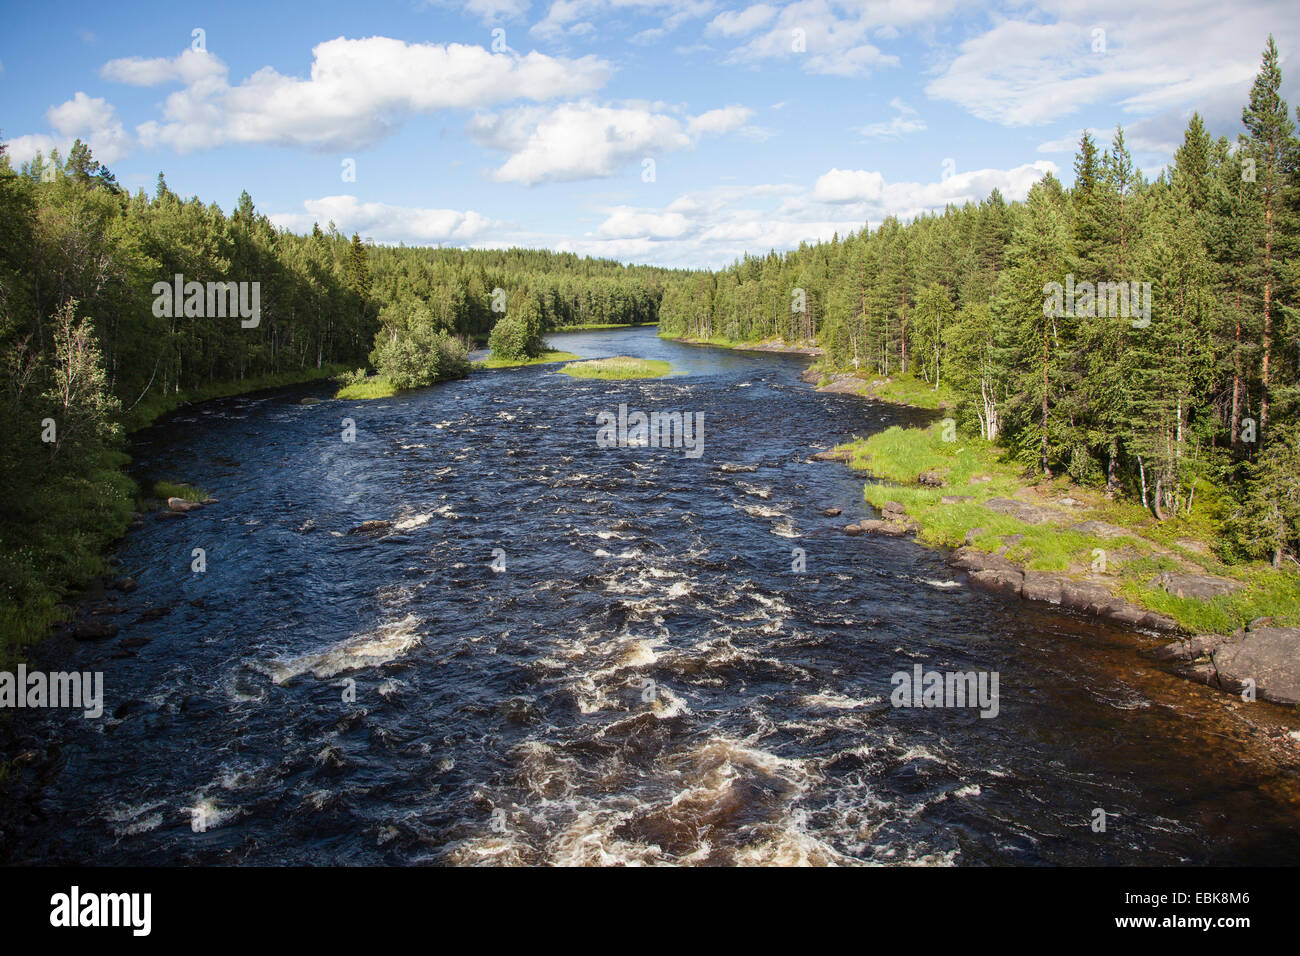 Fluss mit kastanienbraunen Wasser läuft durch einen urzeitlichen Pinienwald, Russland, Karelien, Keret Fluss Stockfoto